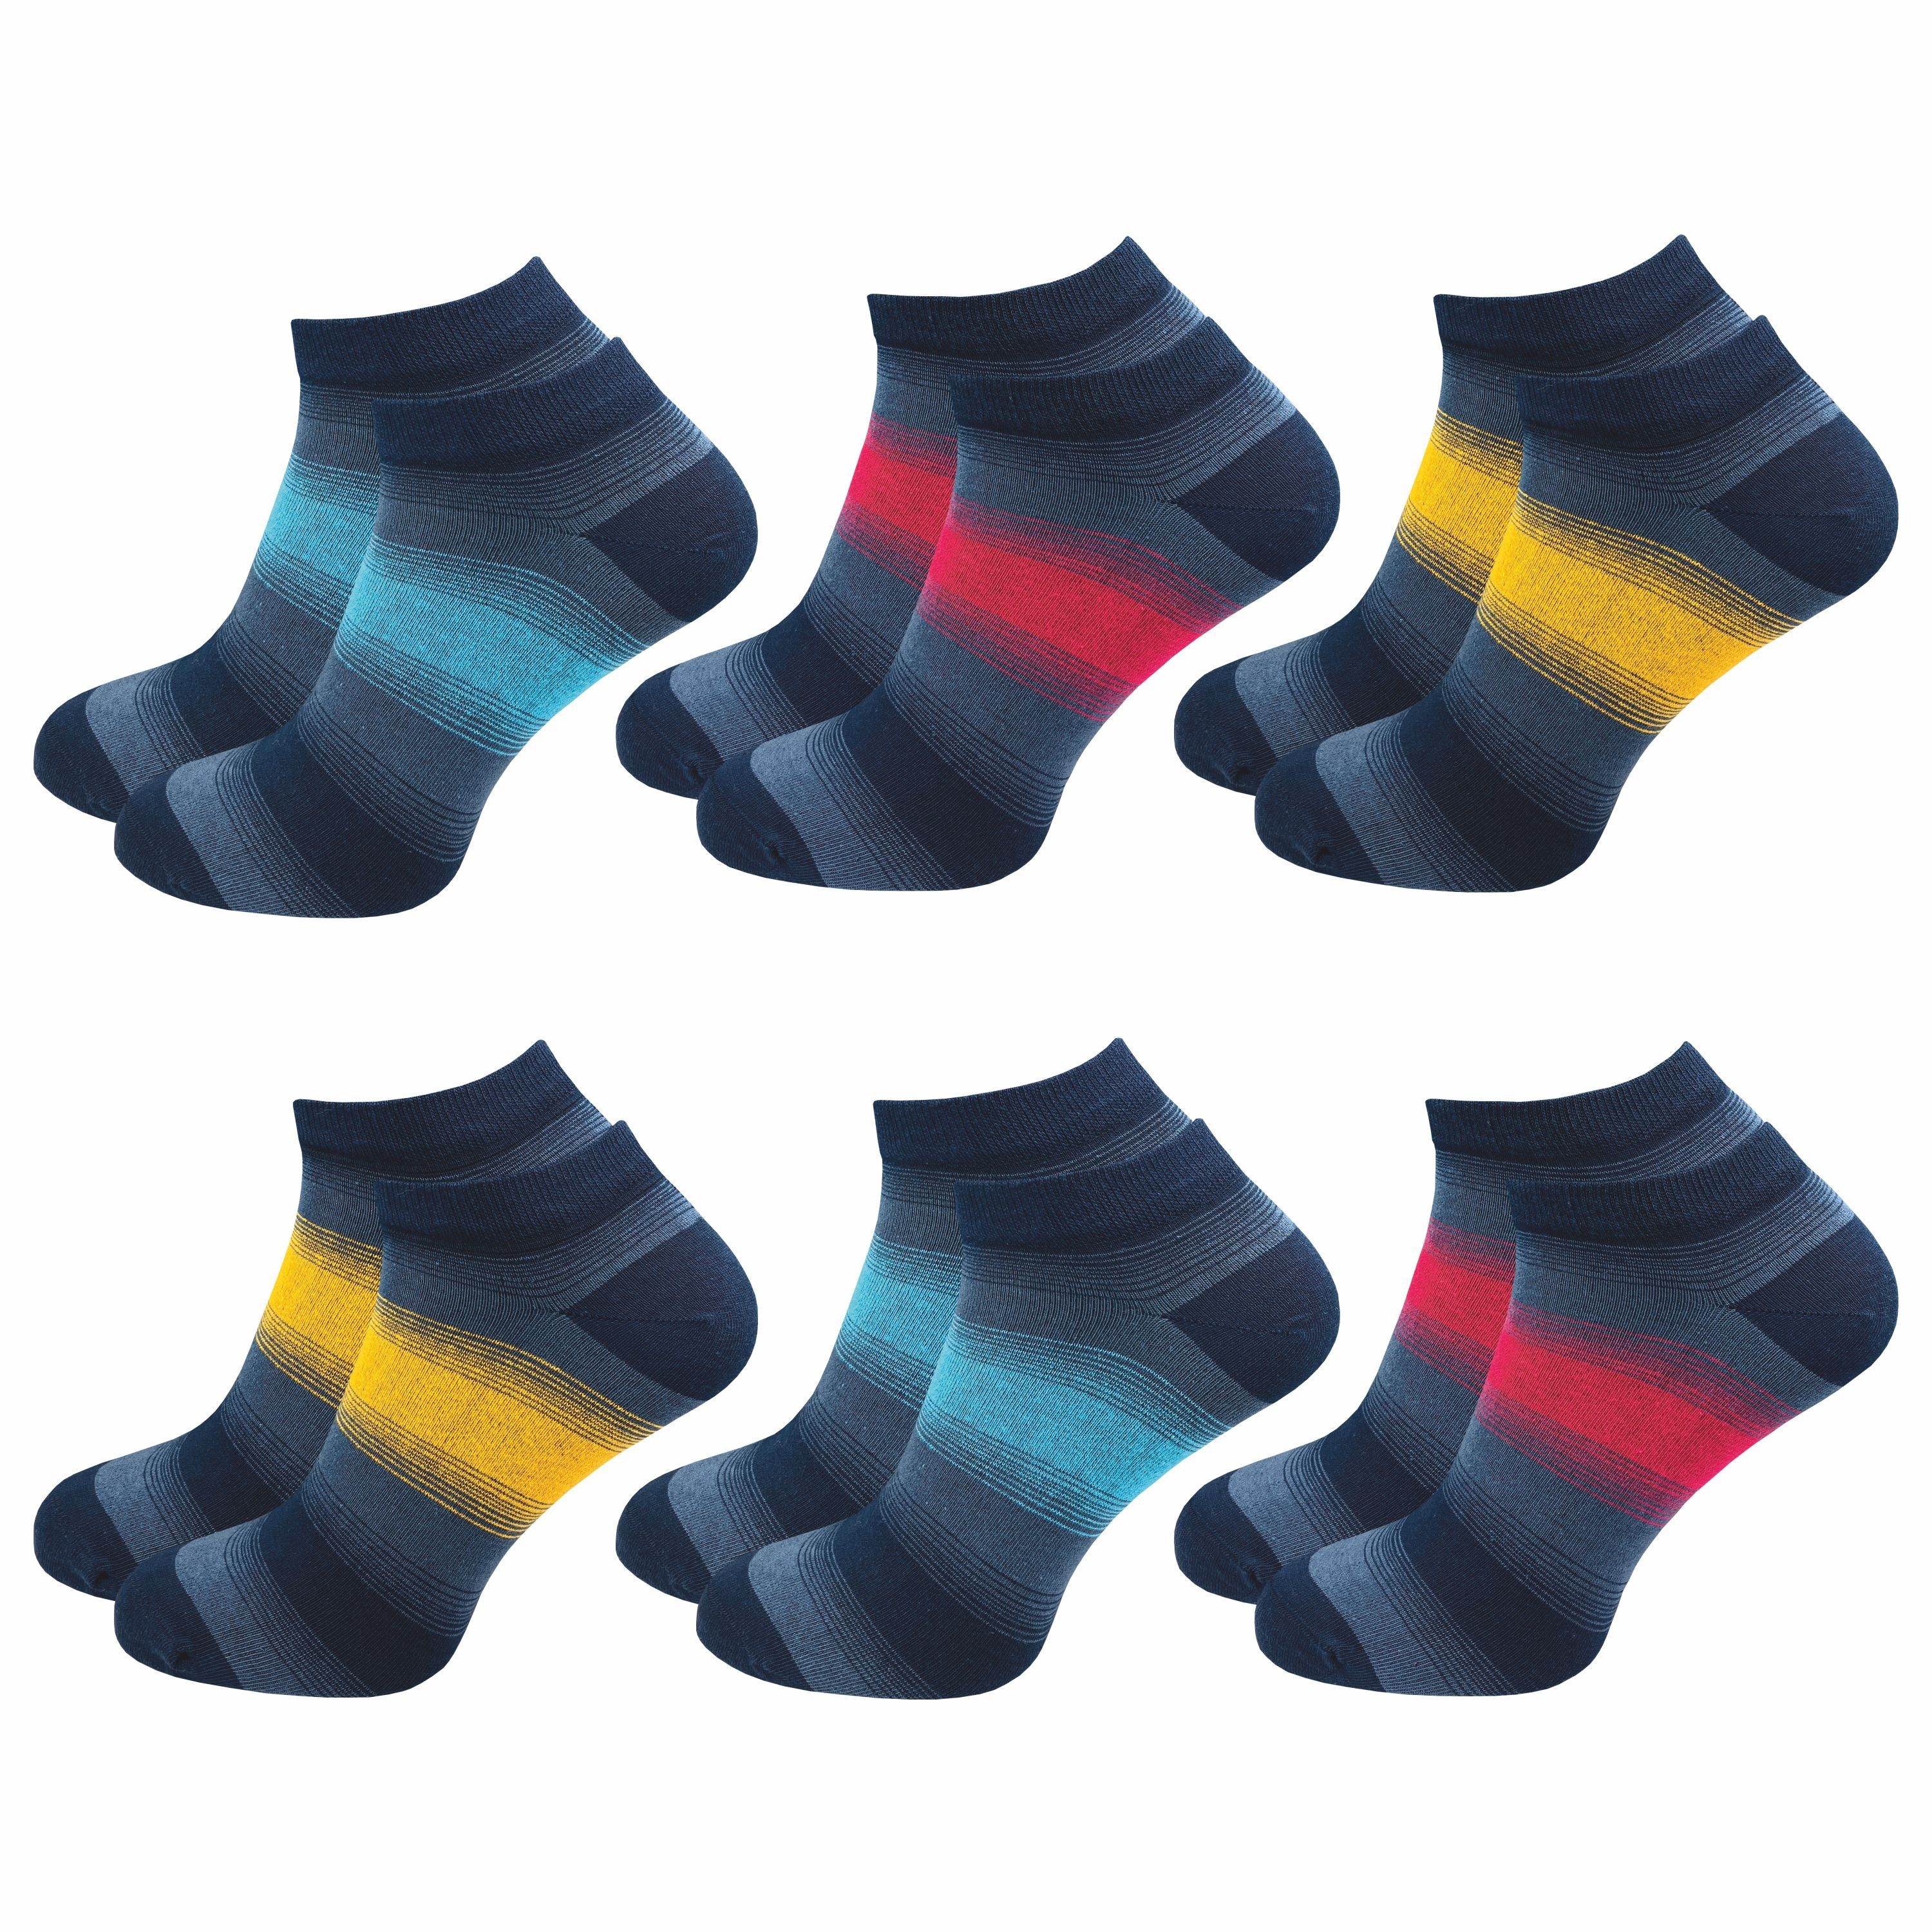 GAWILO Sneakersocken für Damen & Herren - bunte kurze Socken mit hohem Baumwollanteil (6 Paar) Extra feines Maschenbild - absolut blickdicht - Ringel Muster Farbig 1